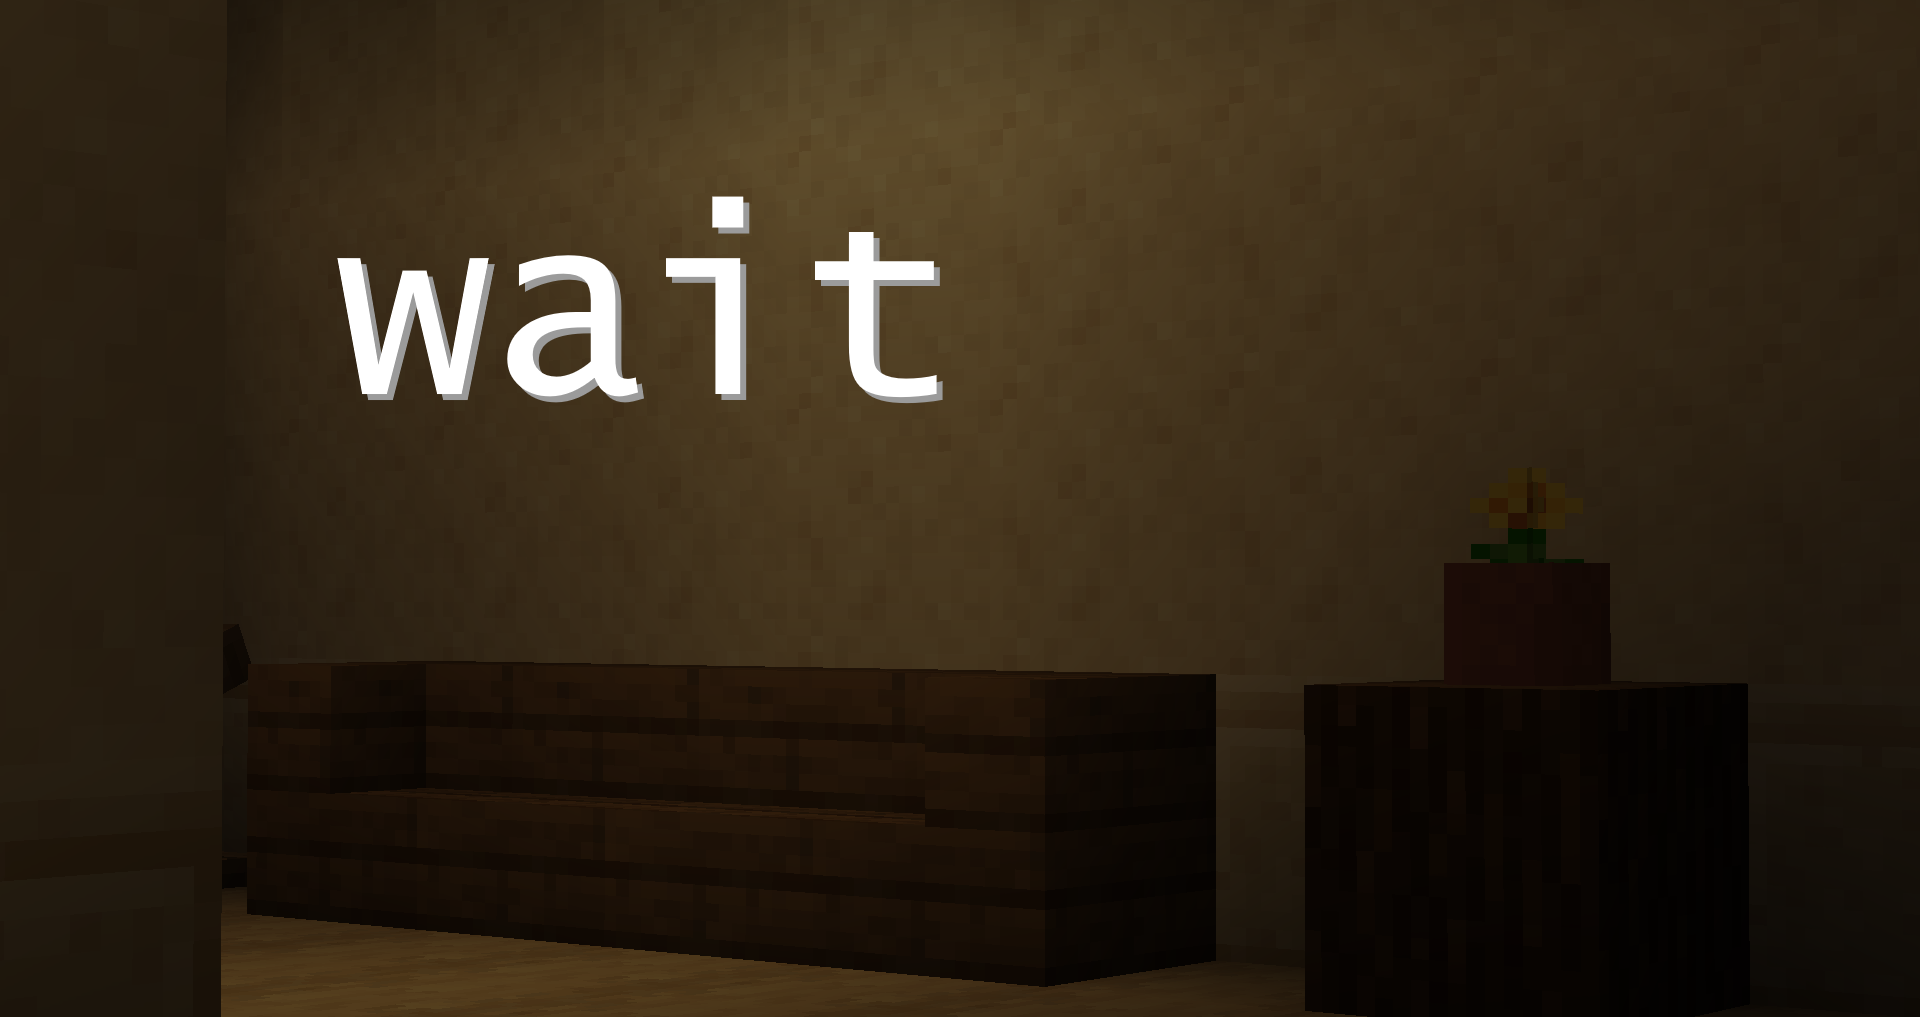 İndir Wait için Minecraft 1.14.3